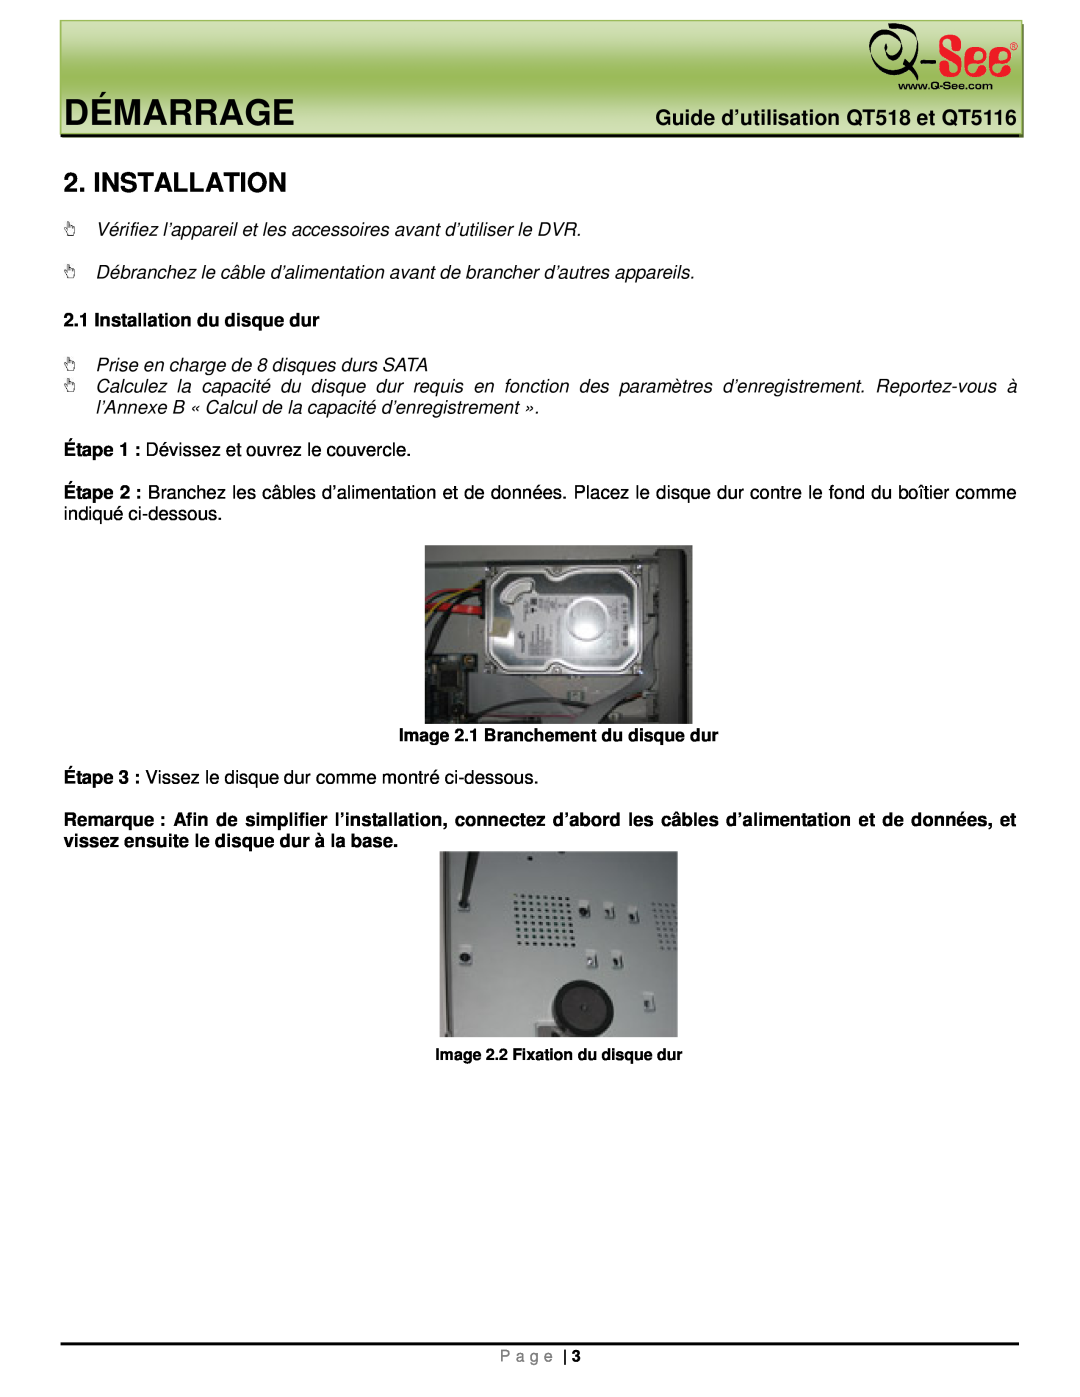 Q-See manual Démarrage, Installation, Guide d’utilisation QT518 et QT5116 